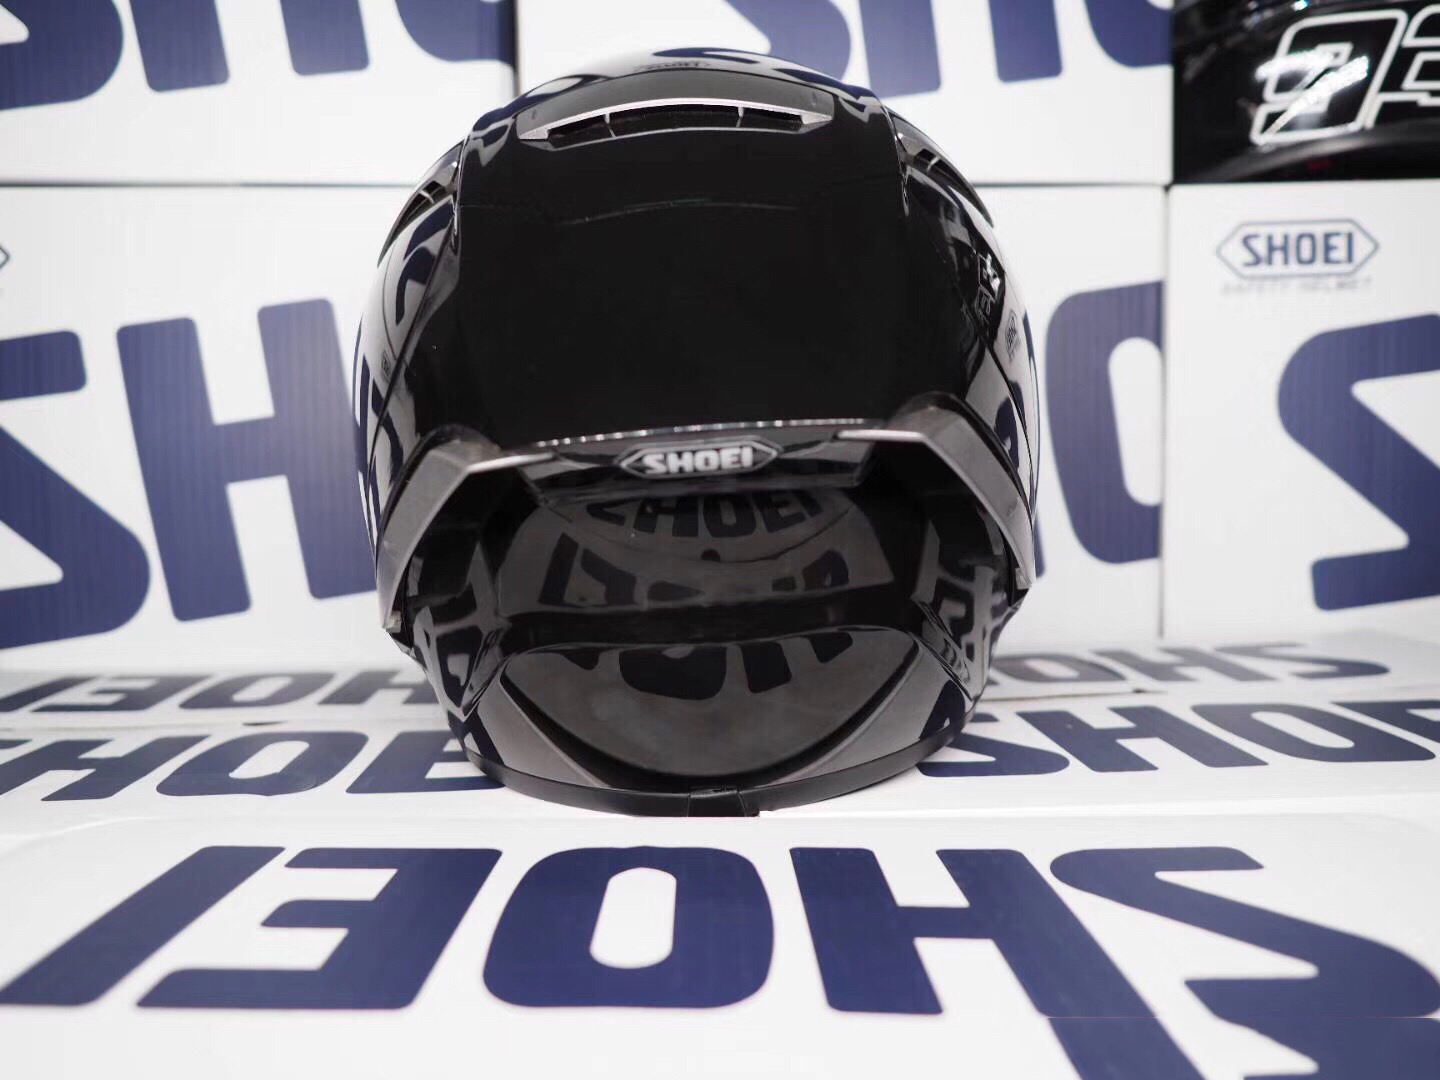 Full Face Motorcycle helmet X14 93 marquez black pure white Helmet anti-fog visor Riding Motocross Racing Motobike Helmet